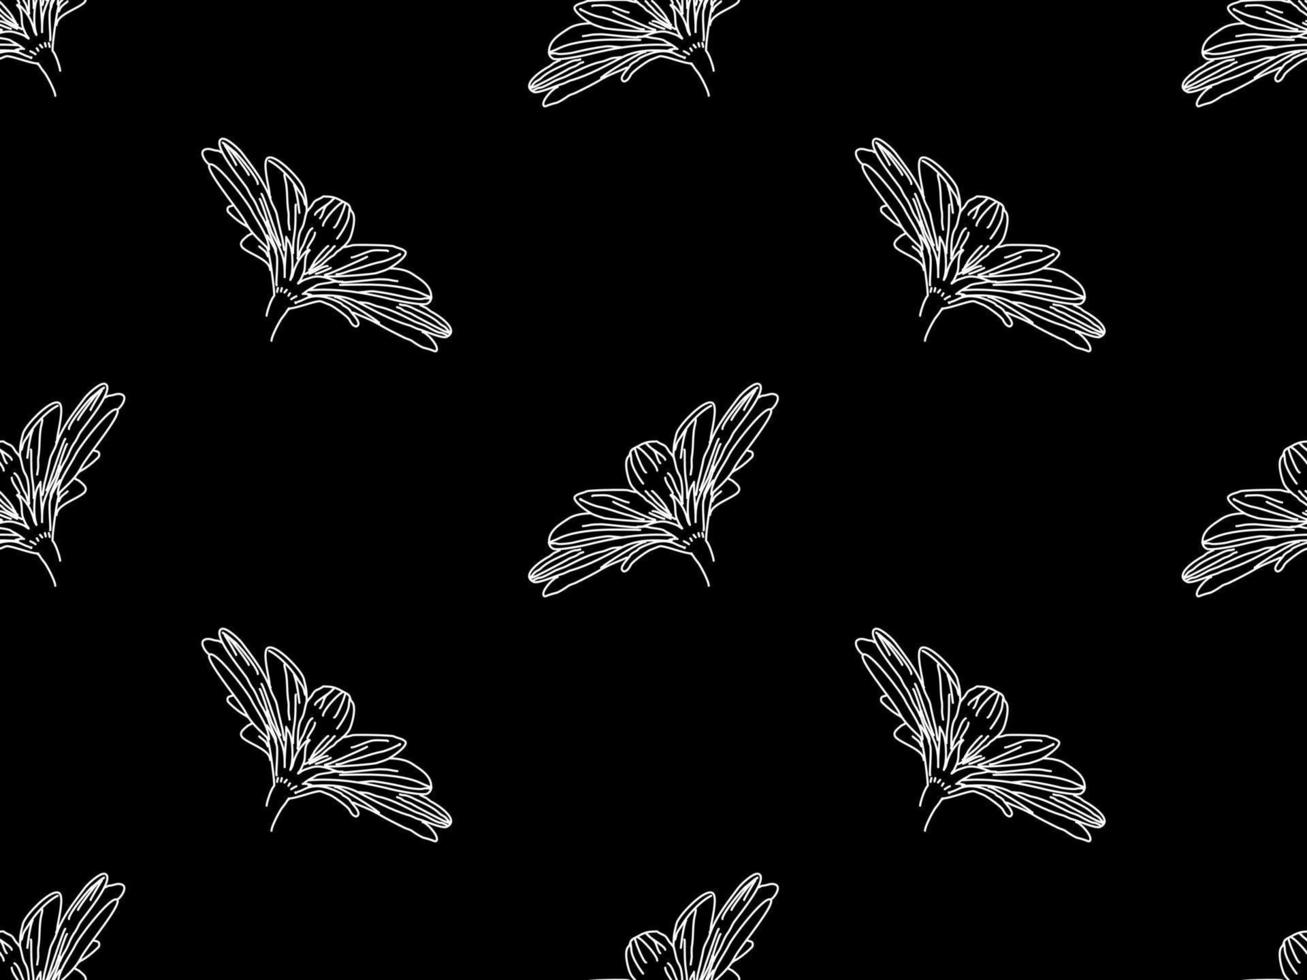 bloem stripfiguur naadloos patroon op zwarte achtergrond vector